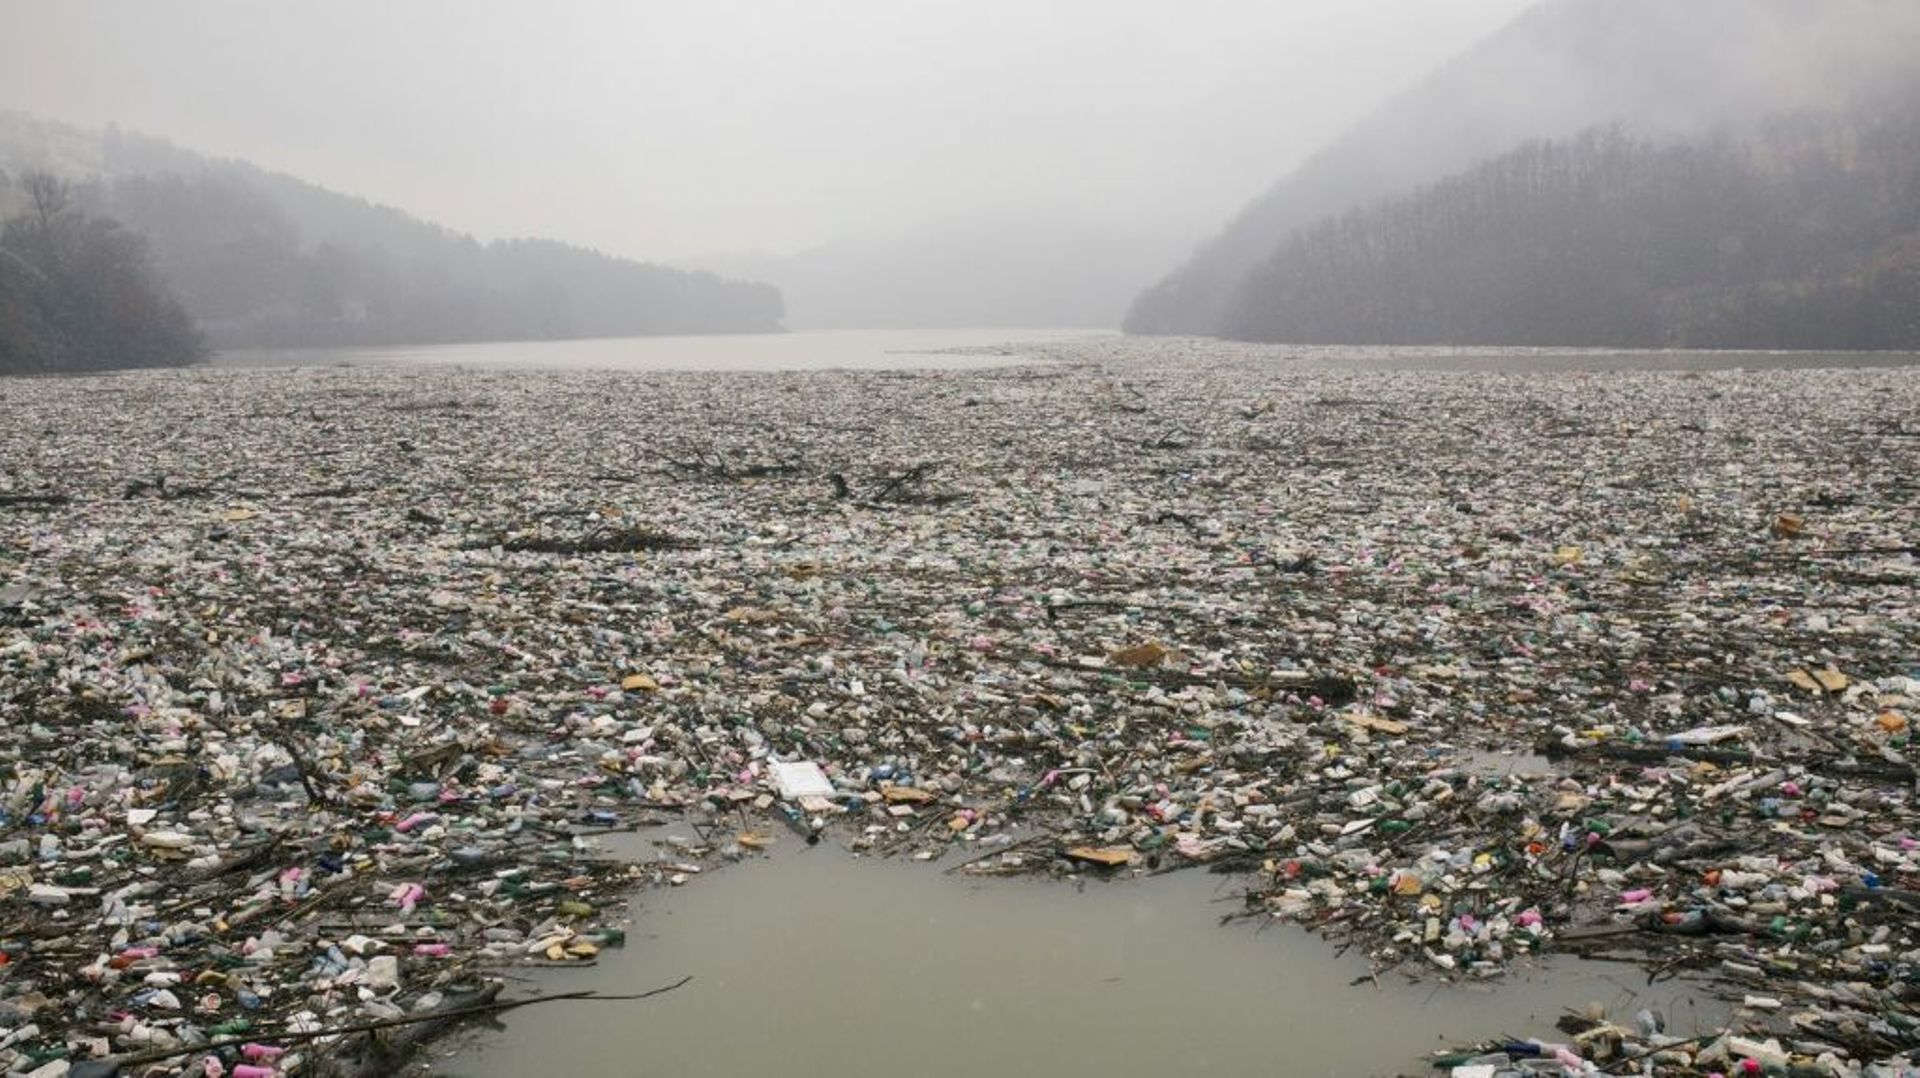 La surface du lac de Potpec recouverte de déchets, le 8 janvier 2021 à Priboj, en Serbie